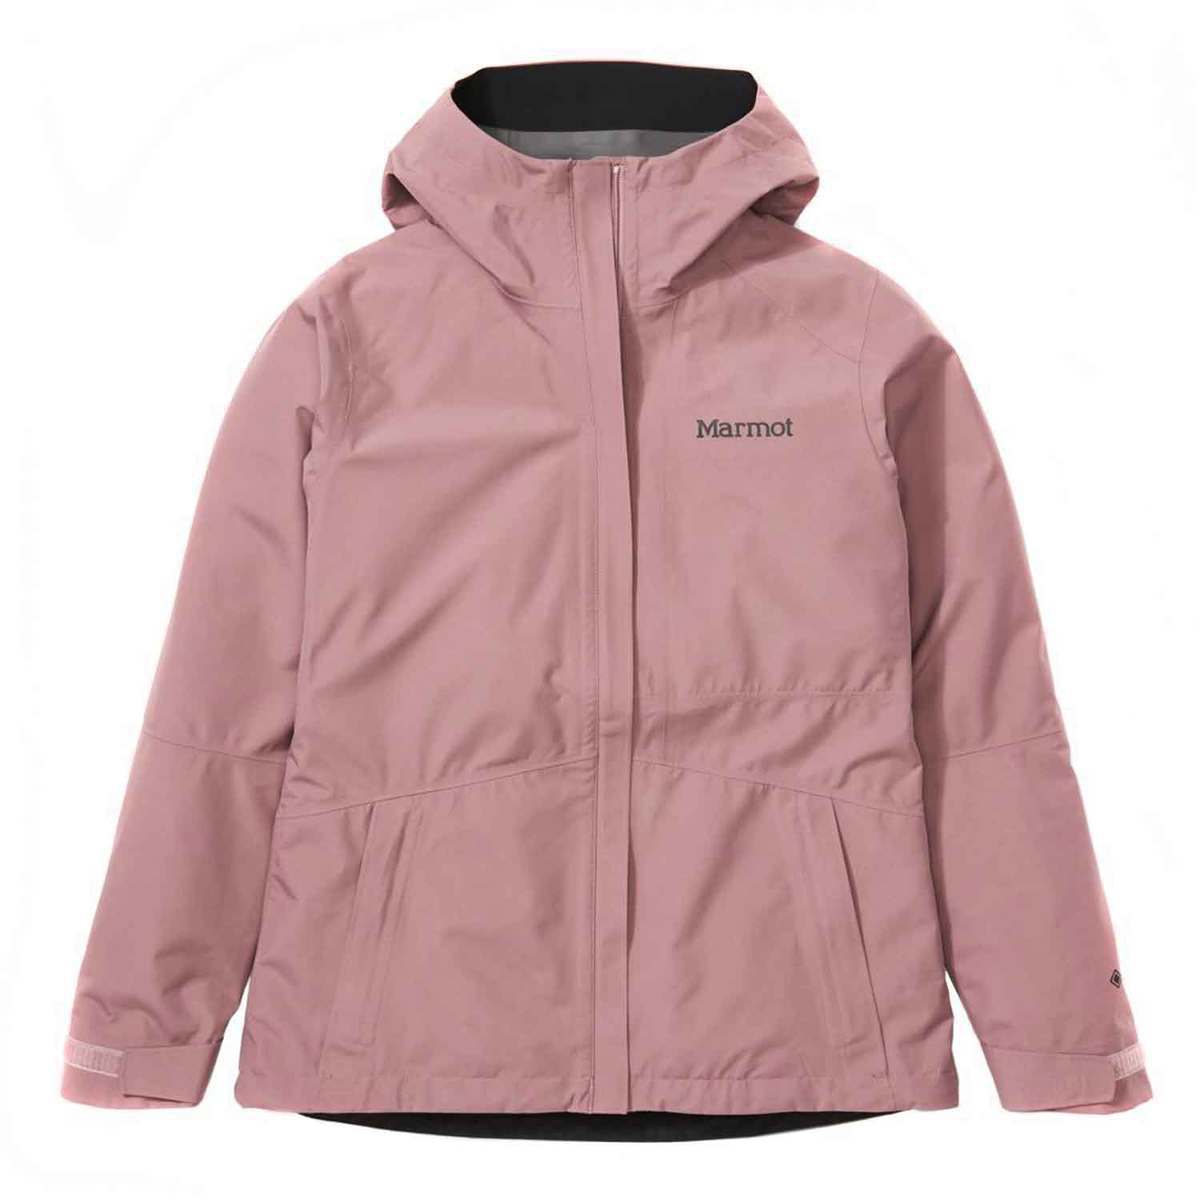 Marmot Women's Minimalist Waterproof Rain Jacket | Sportsman's Warehouse